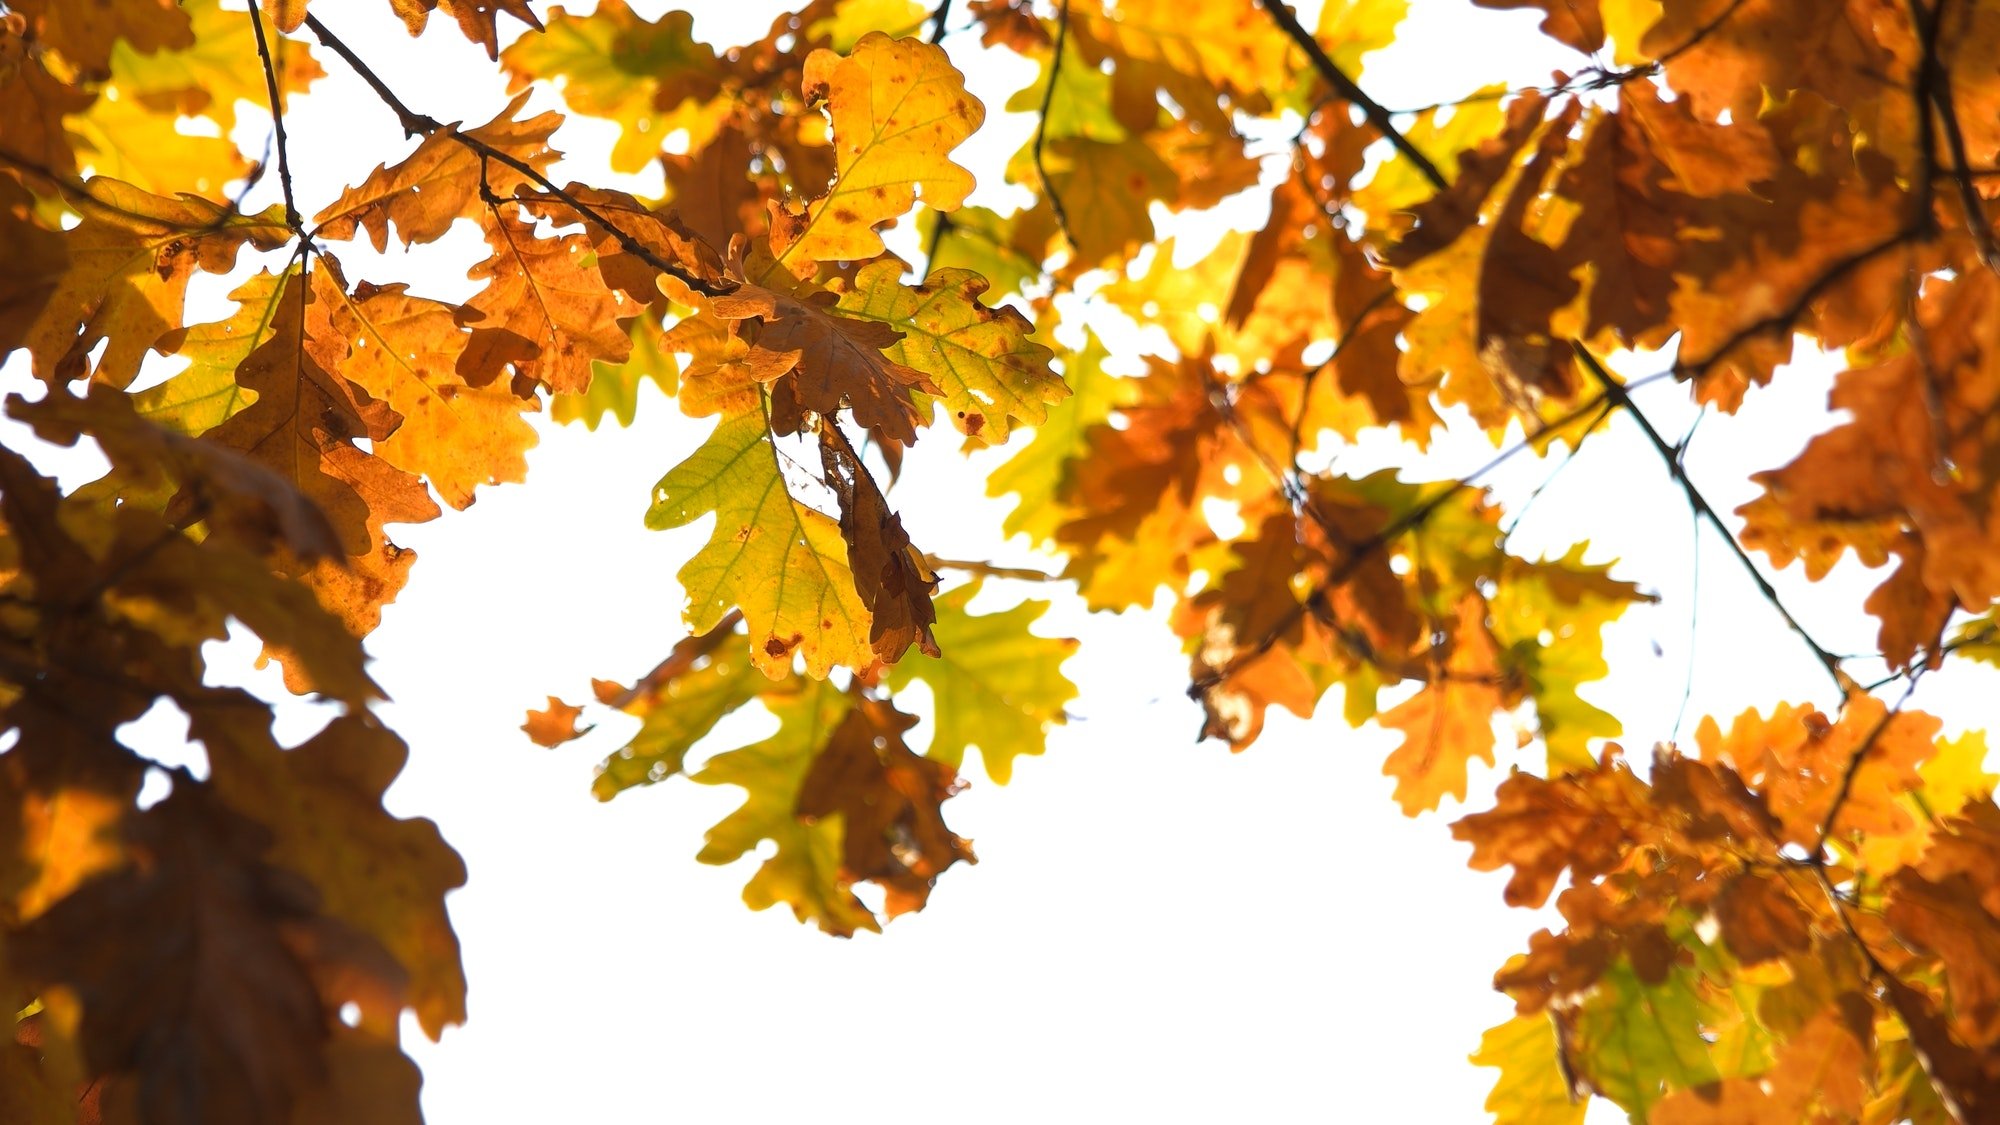 Autumn oak leaves in sunlight.